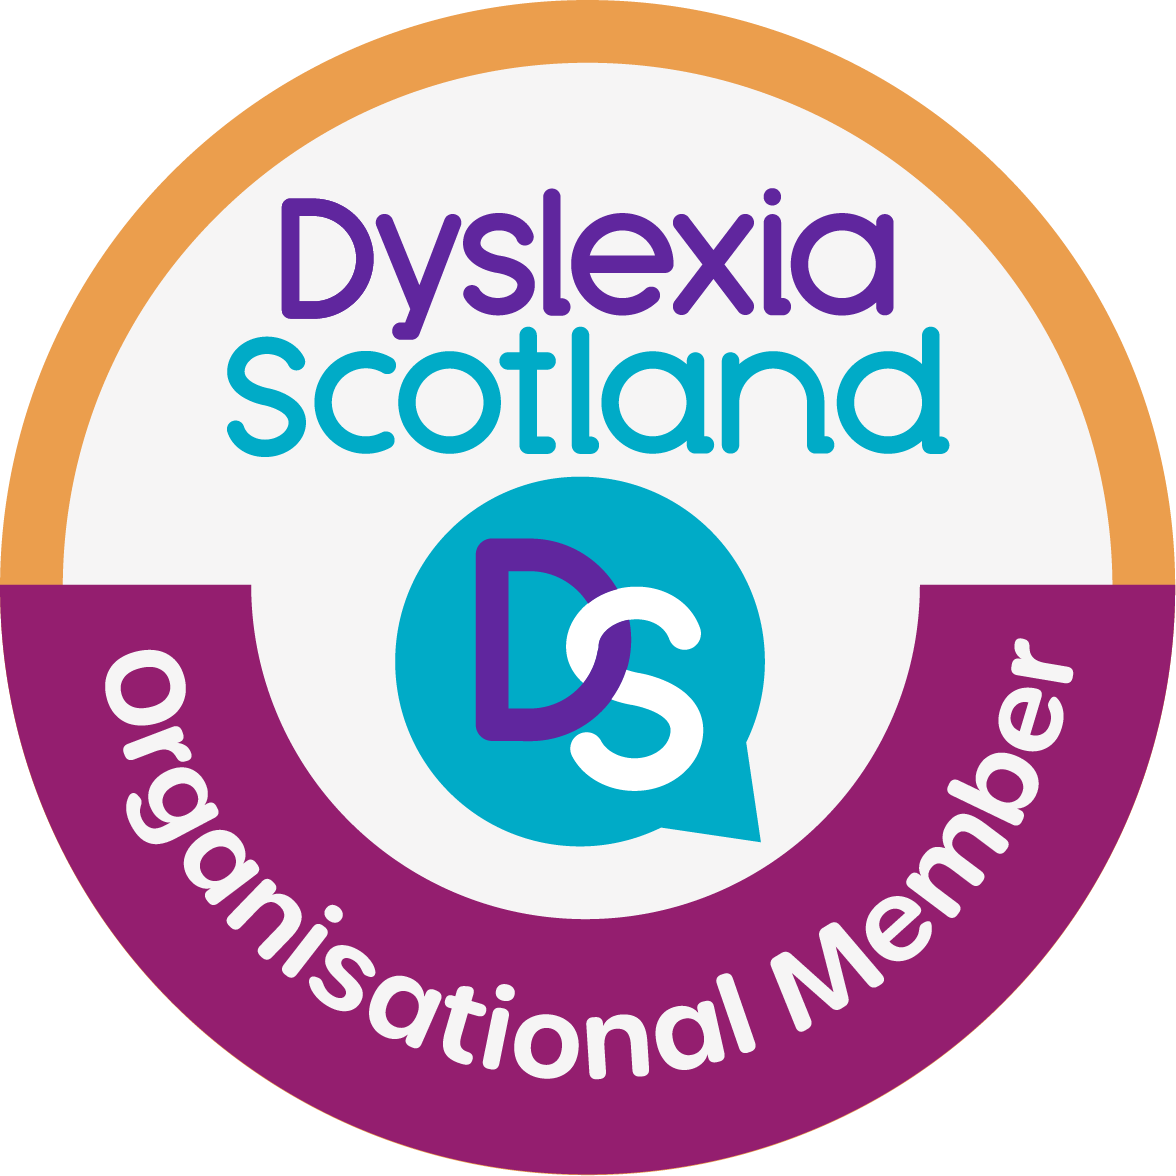 Dyslexia Scotland Org logo